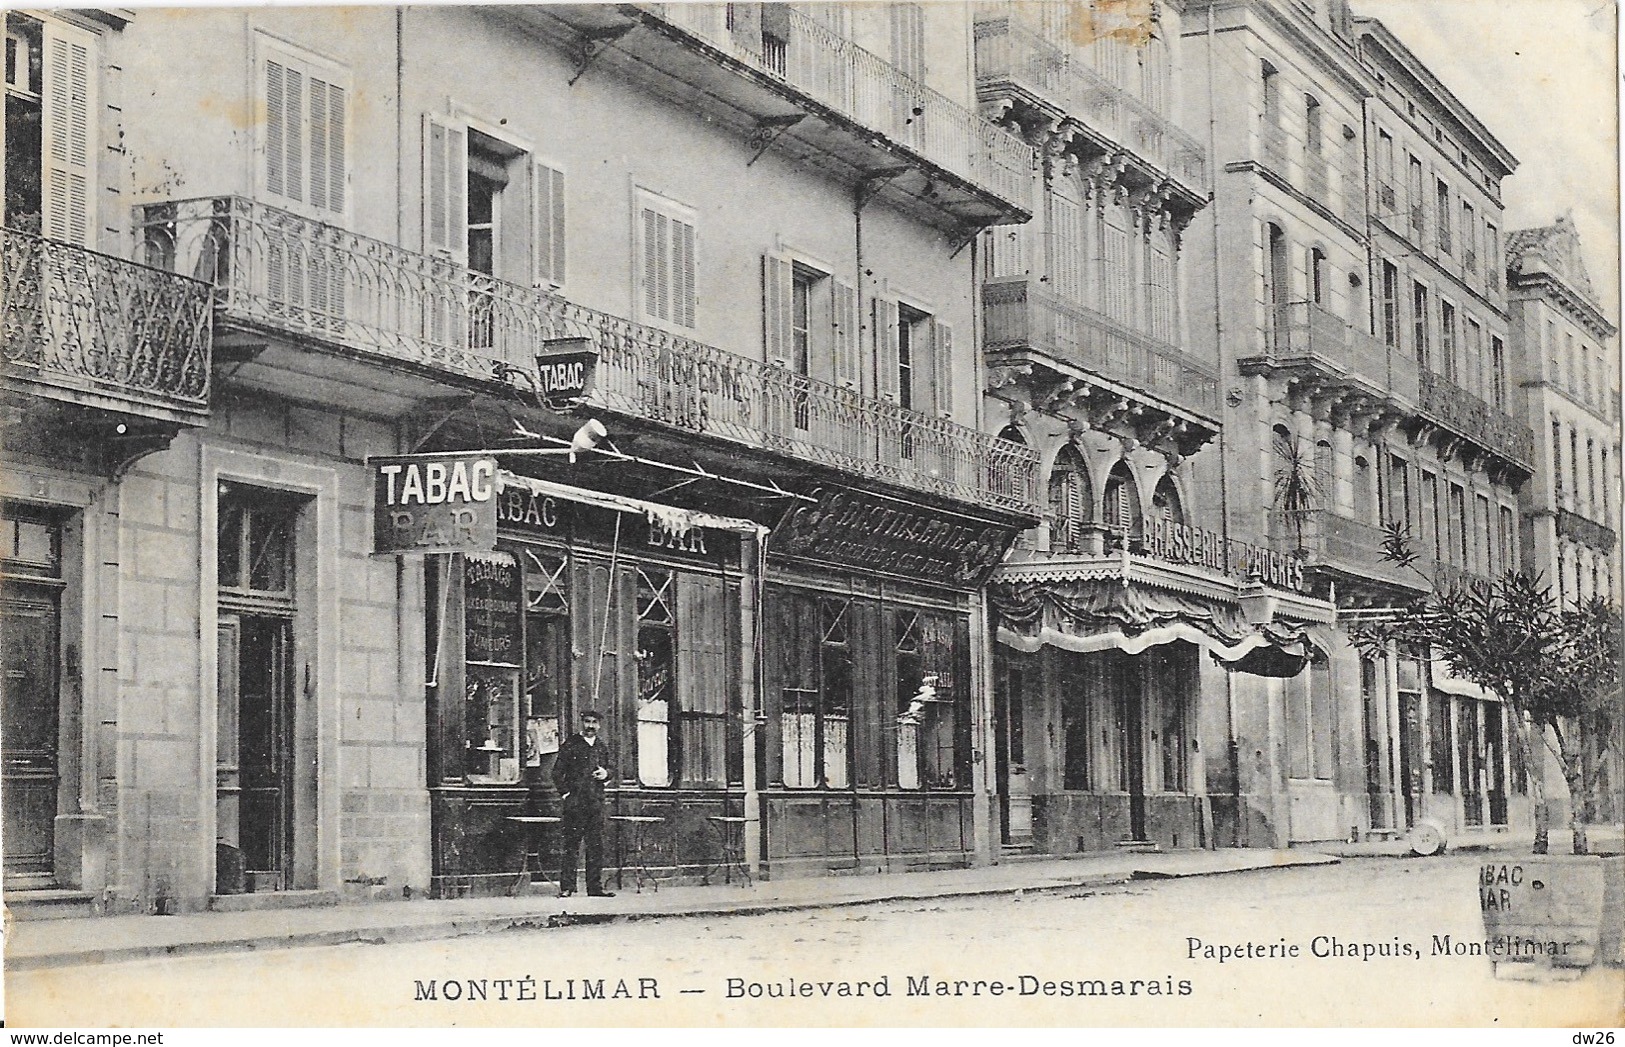 Montélimar (Drôme) Boulevard Marre-Desmarais, Bar-Tabac - Papeterie Chapuis - Montelimar